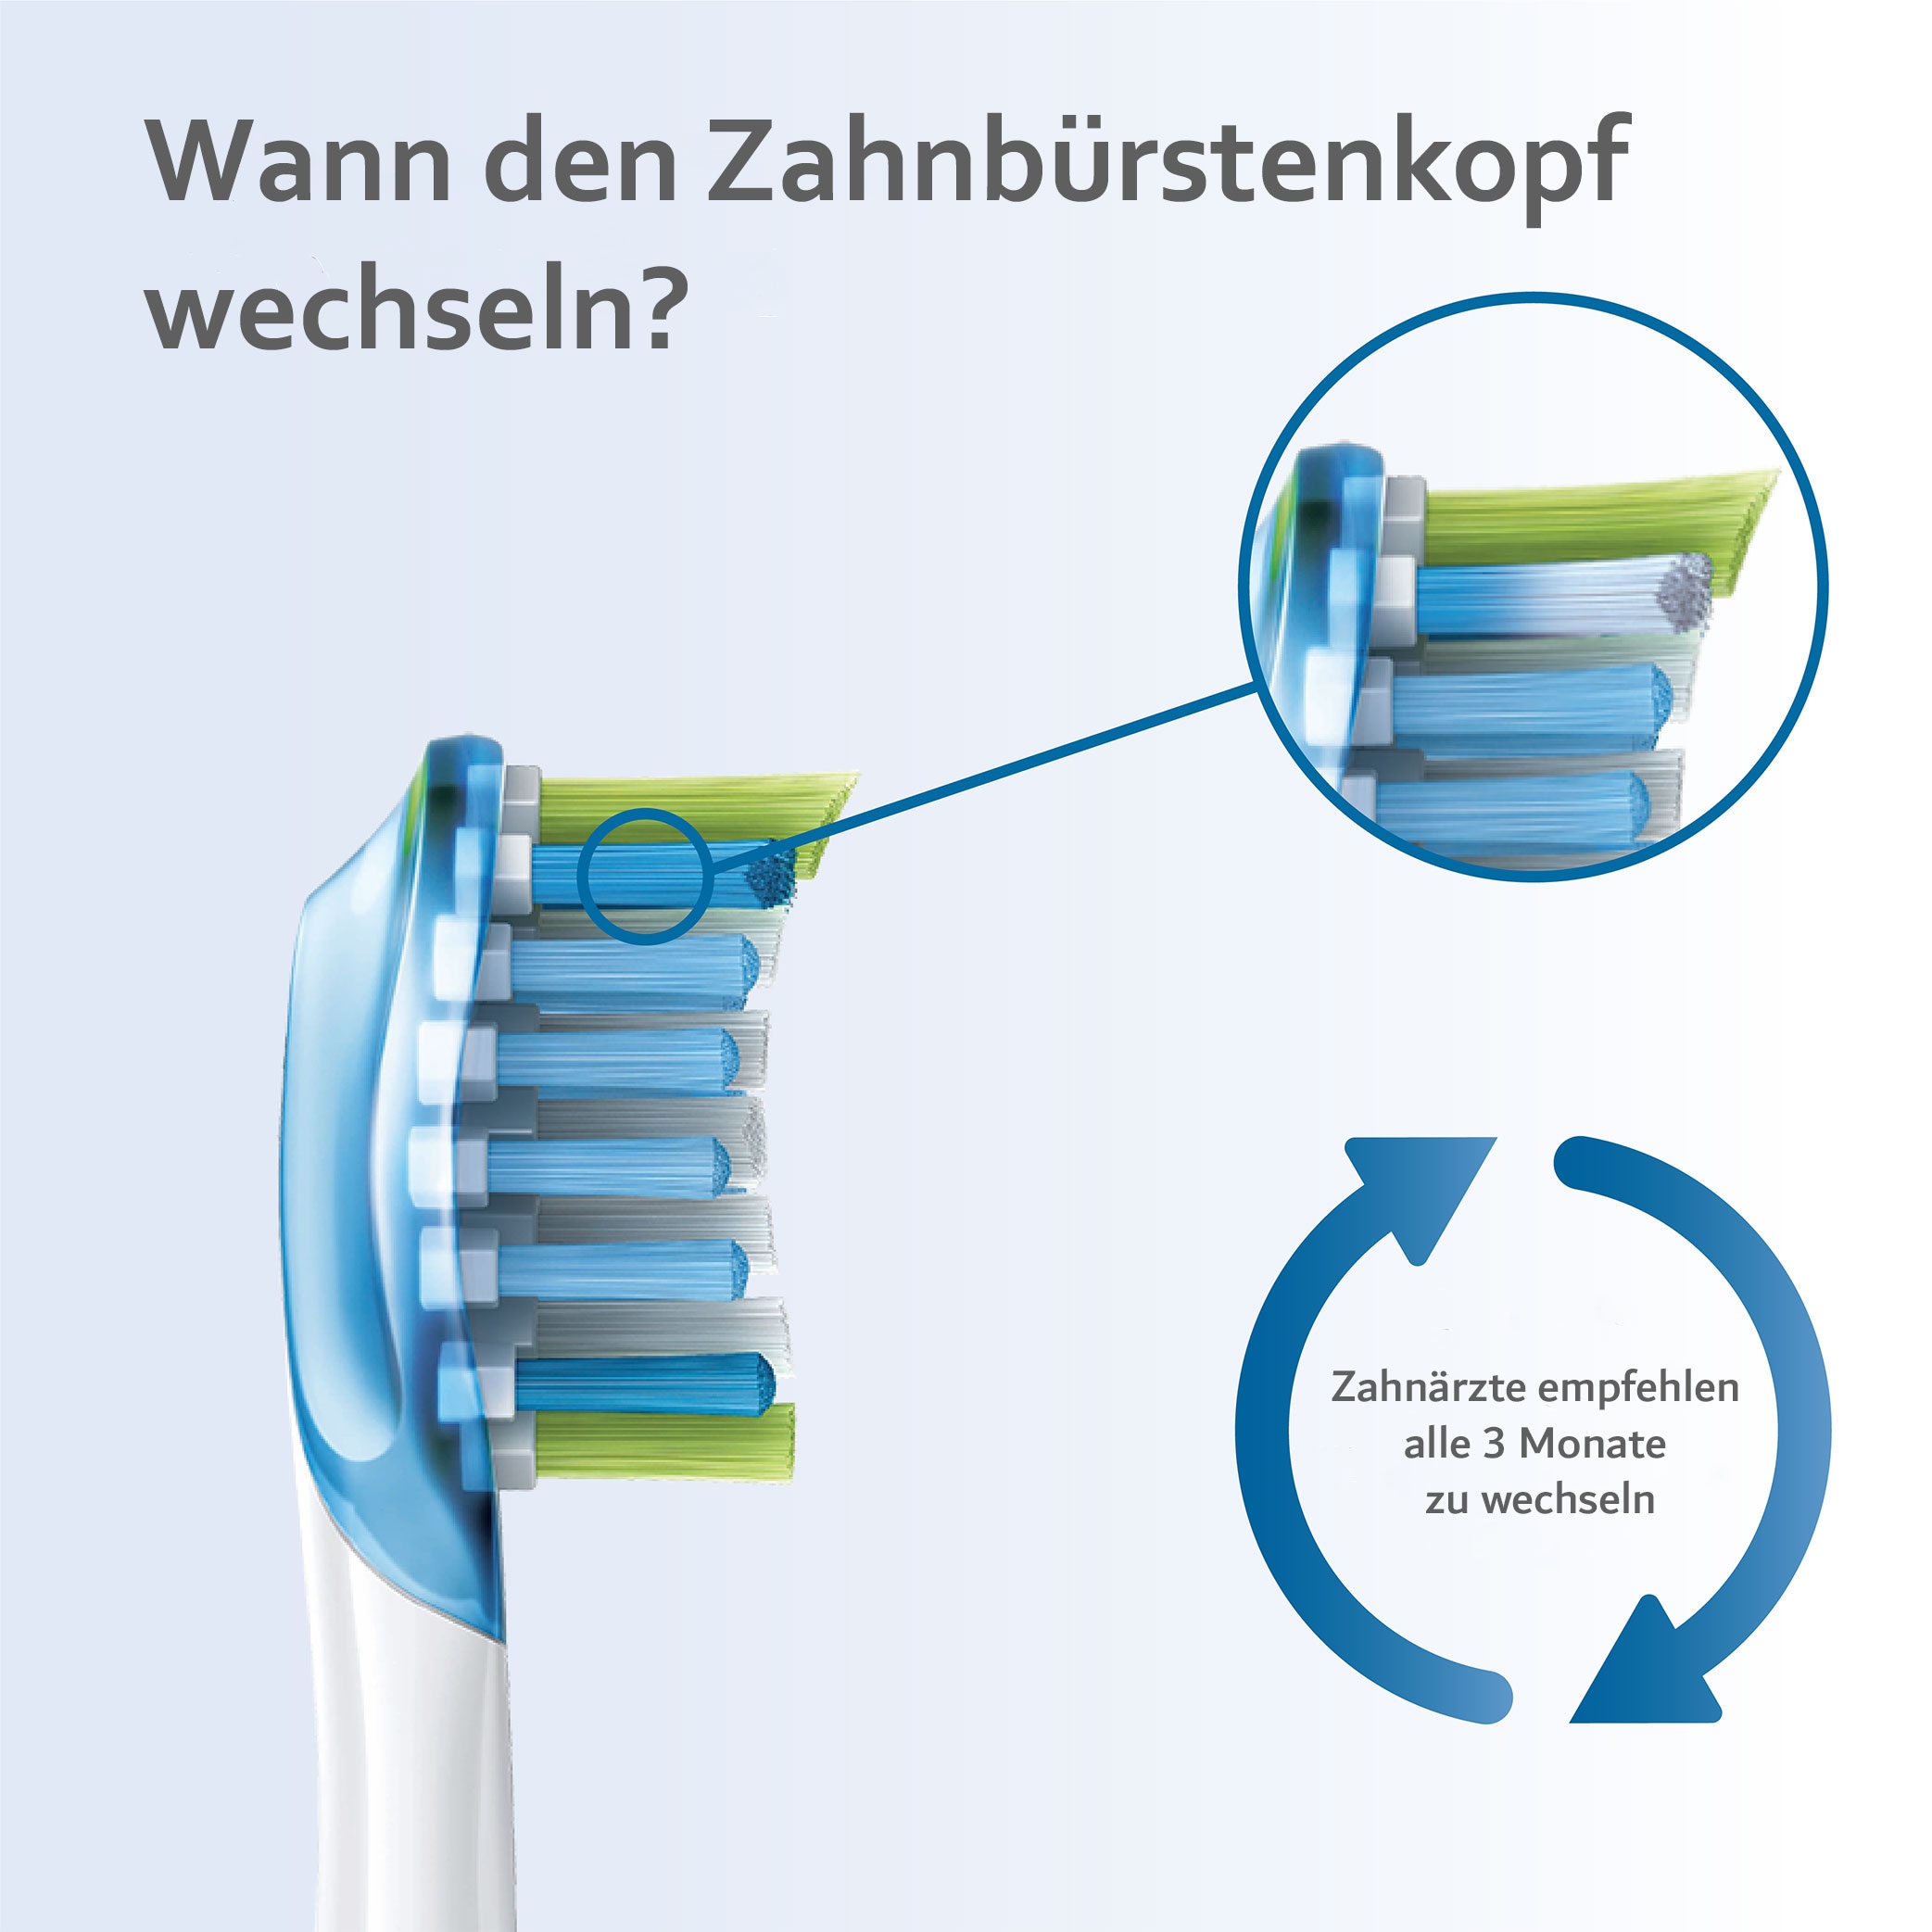 Philips Sonicare Aufsteckbürsten »C3 Premium Plaque Control«, Standardgrösse, mit Smart-Bürstenkopferkennung